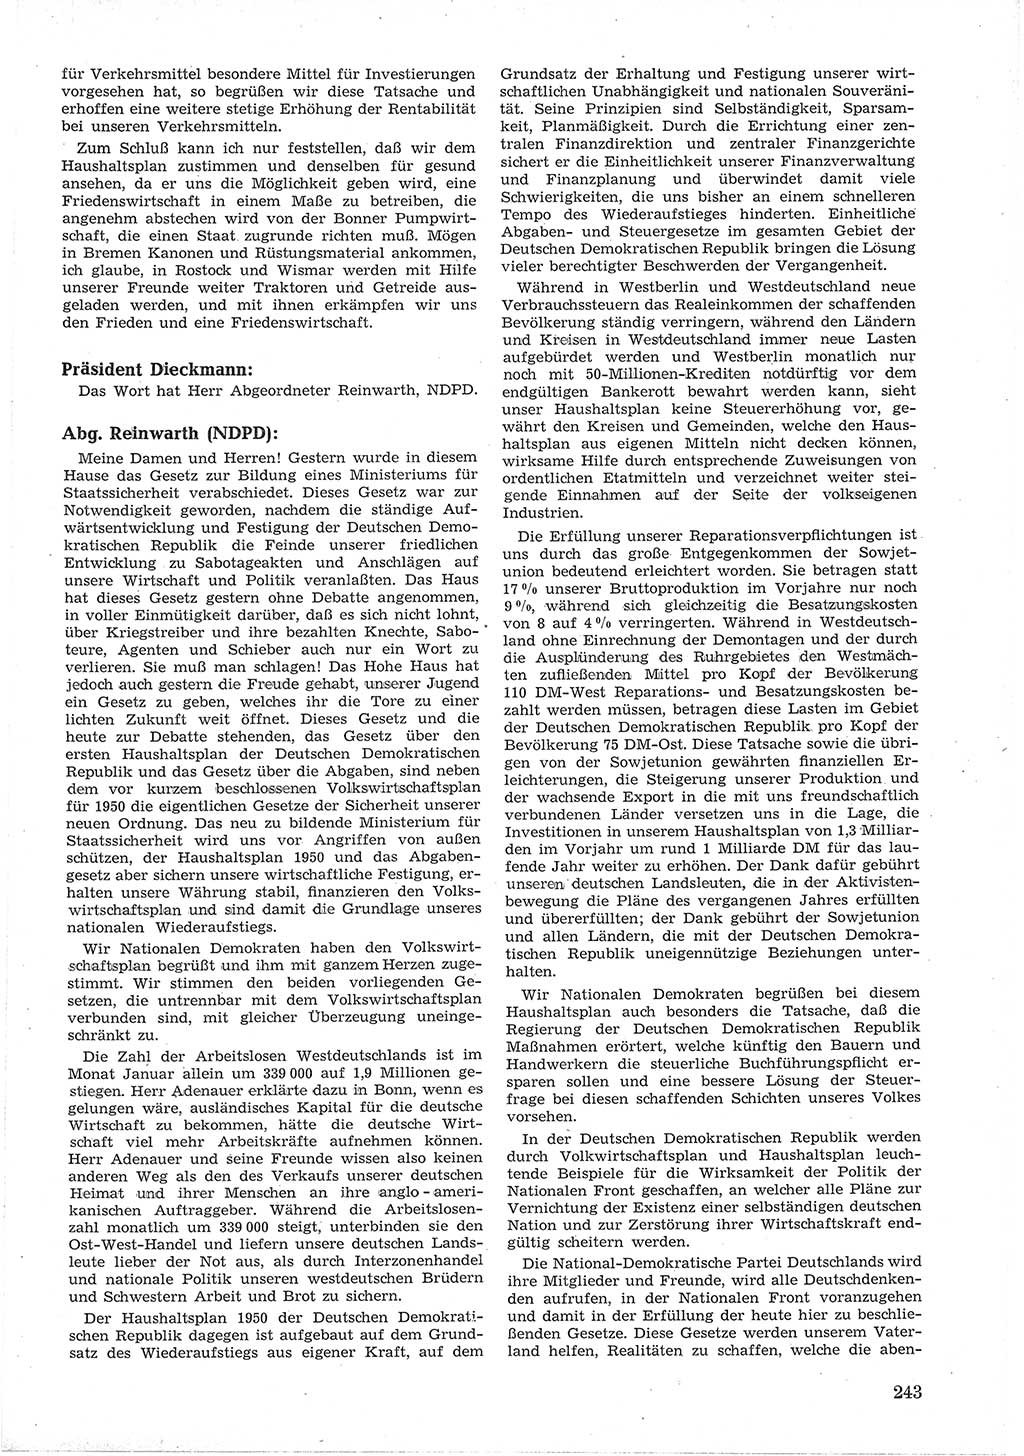 Provisorische Volkskammer (VK) der Deutschen Demokratischen Republik (DDR) 1949-1950, Dokument 257 (Prov. VK DDR 1949-1950, Dok. 257)